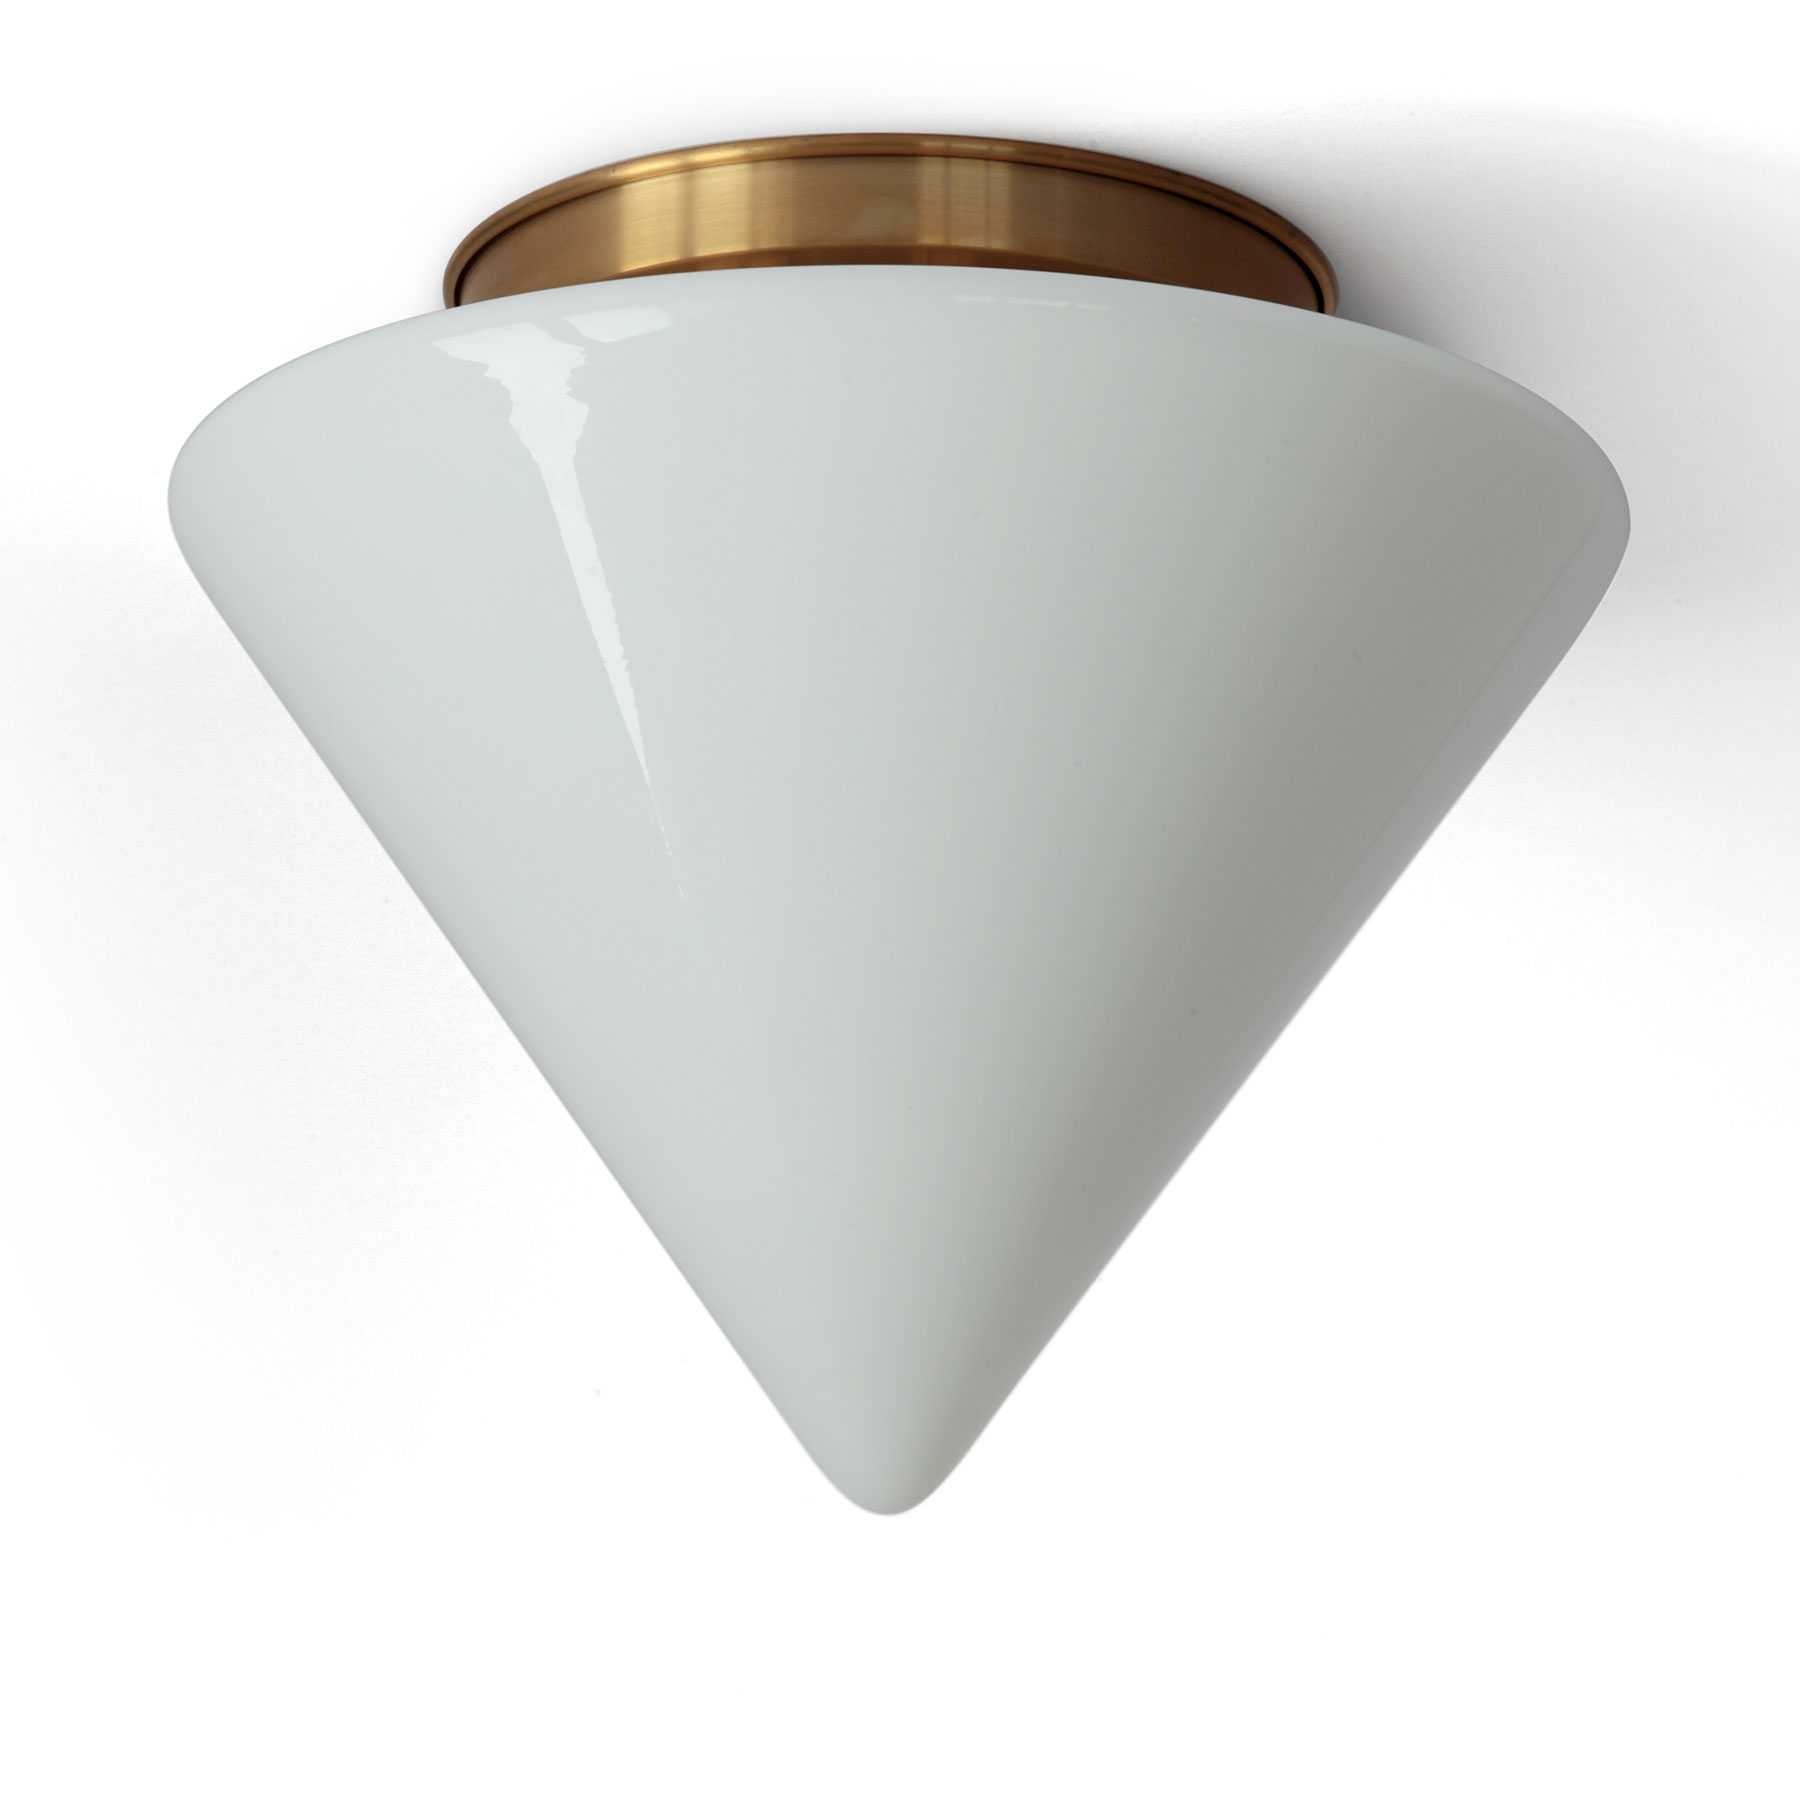 Deckenleuchte mit Kegel-Schirm aus Opalglas Ø 30 cm: Kegel-förmige Opalglas-Deckenleuchte, hier mit Deckenteil in Messing natur